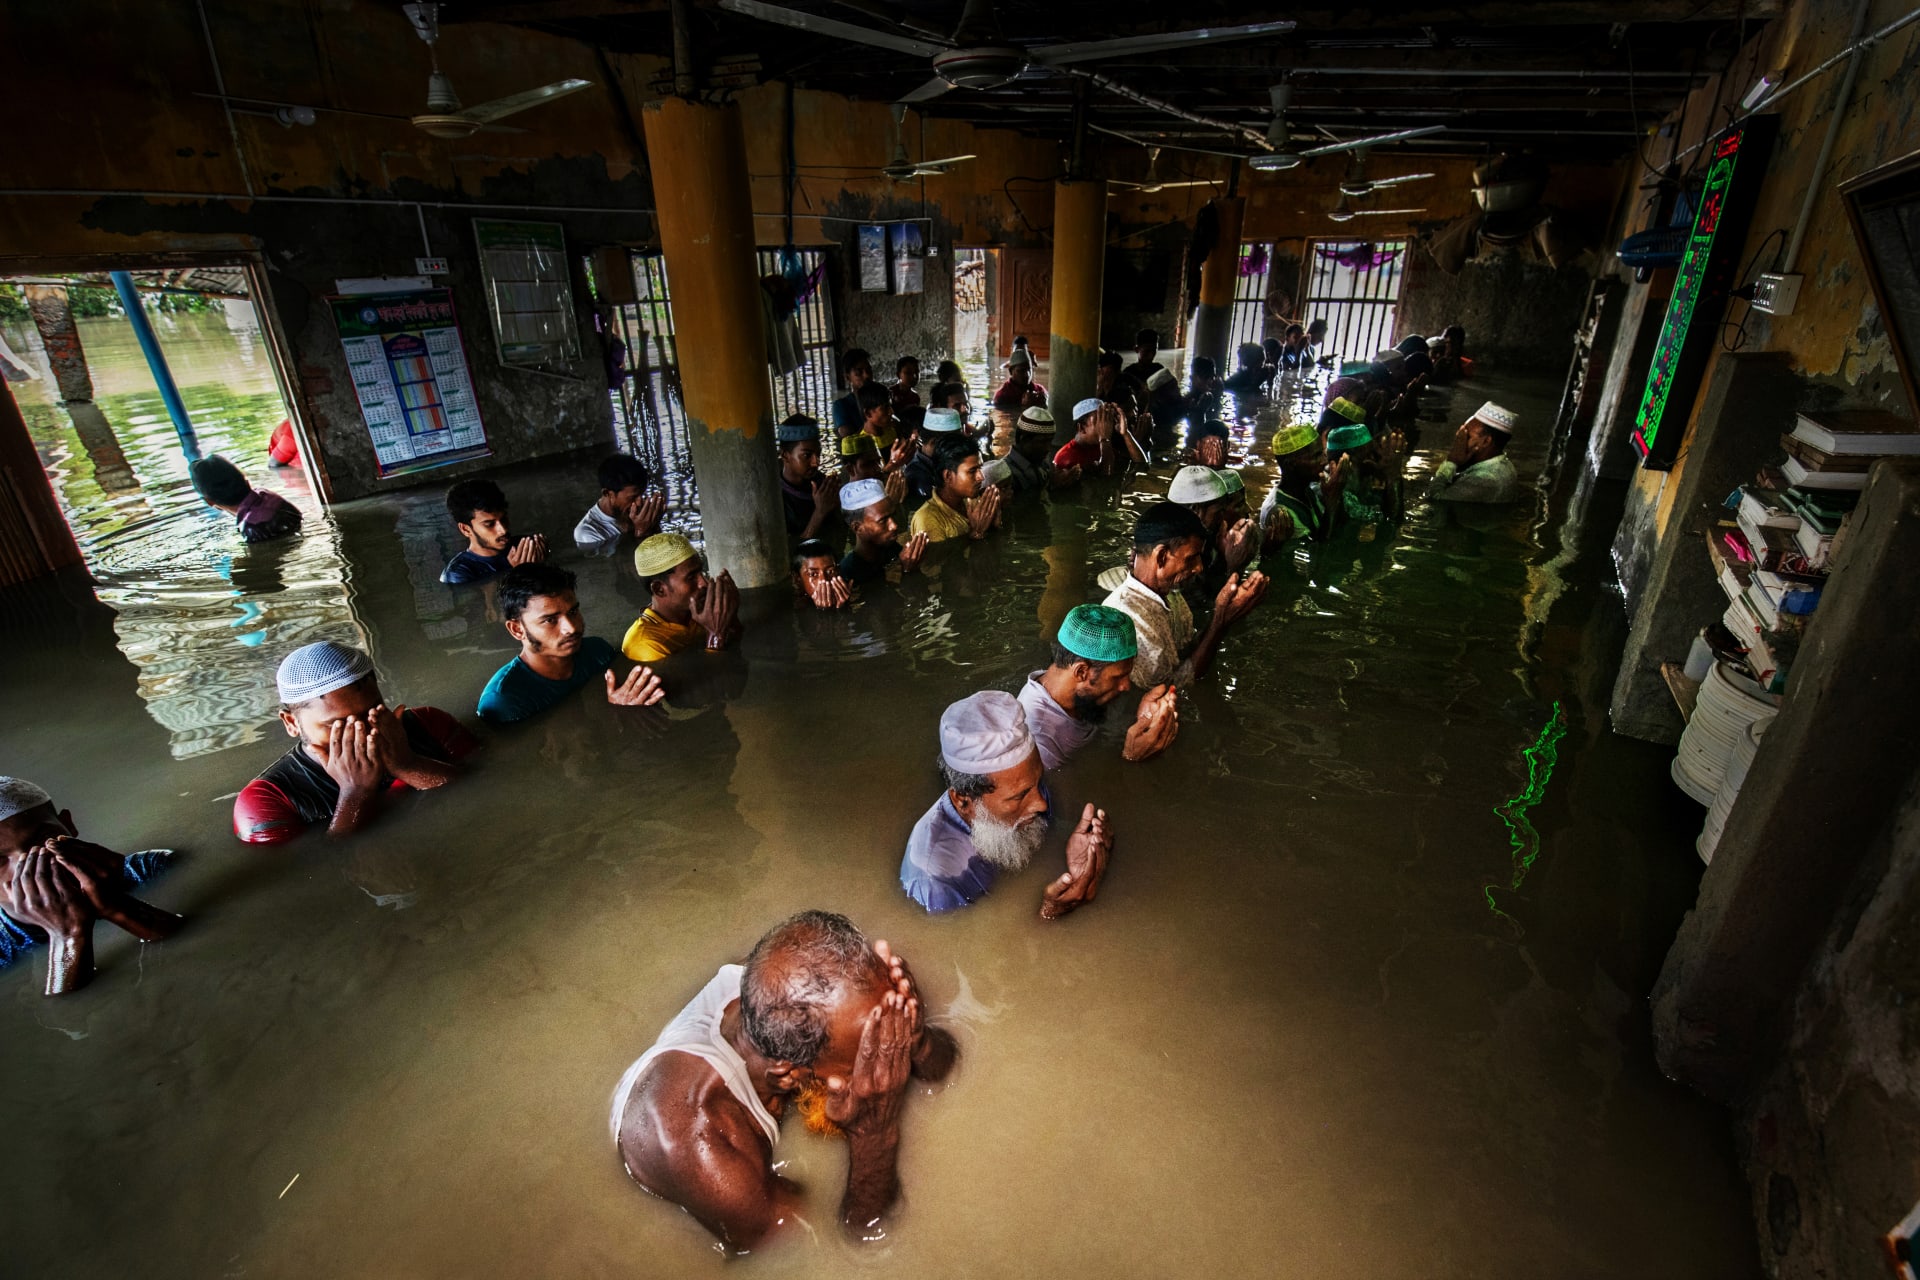 بينها لقطة لمصلين لا يمنكهم السجود من مستوى الماء.. صور مؤلمة تجسد "مآسي الاحتباس الحراري" في بنغلاديش